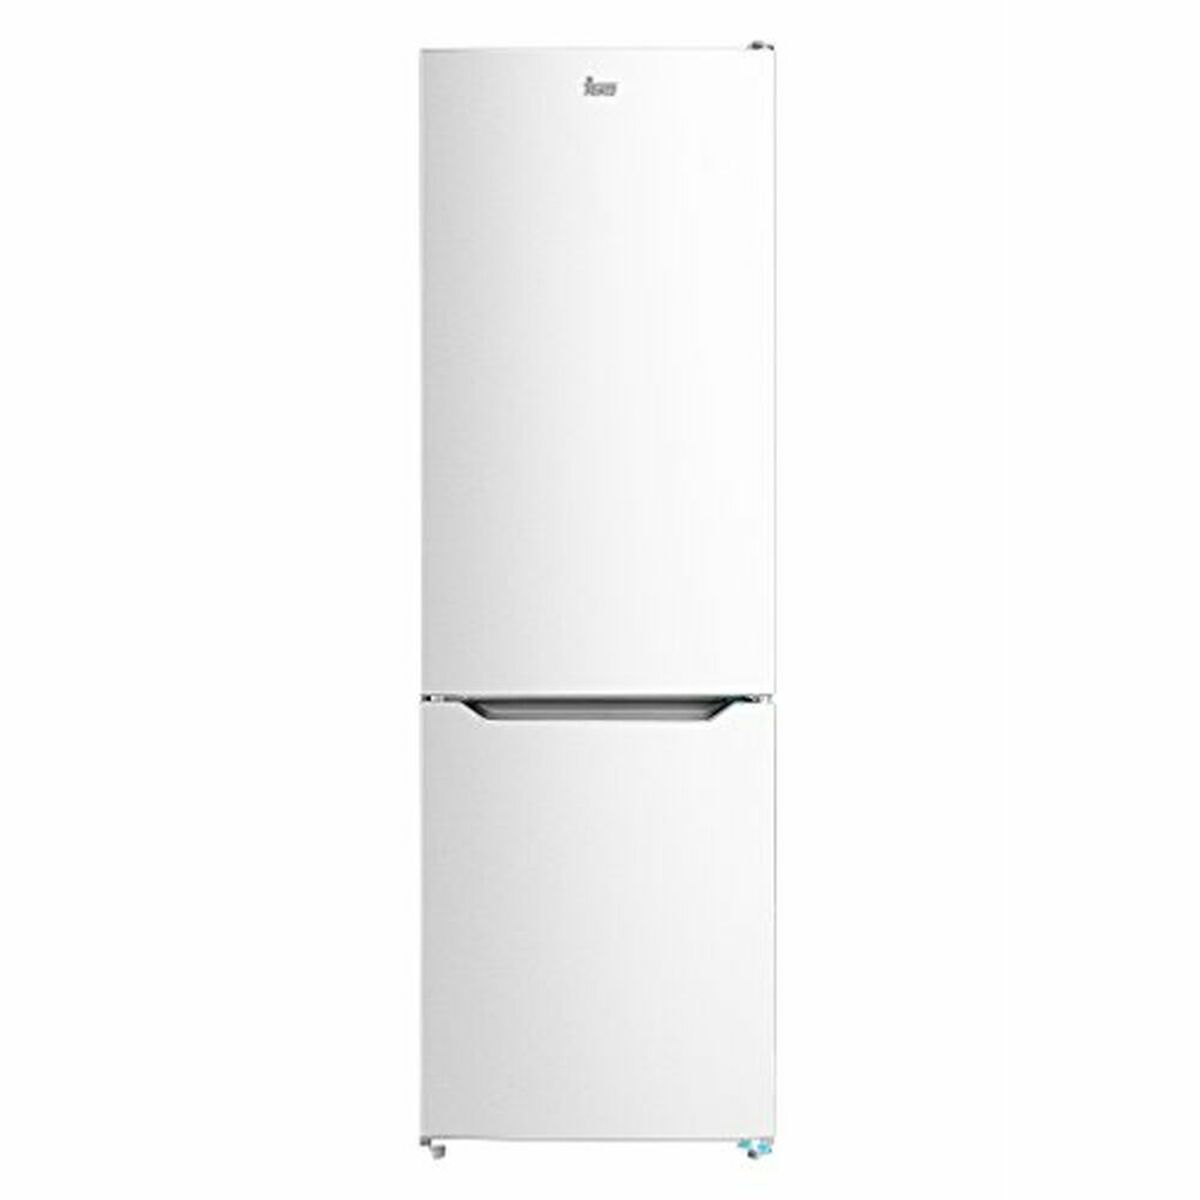 Refrigerateur combine teka nfl320 blanc 188 x 60 cm. Achetez tous vos produits Electromenagers et pas que au Sénégal. Livraison en 24H à Dakar sous conditions.